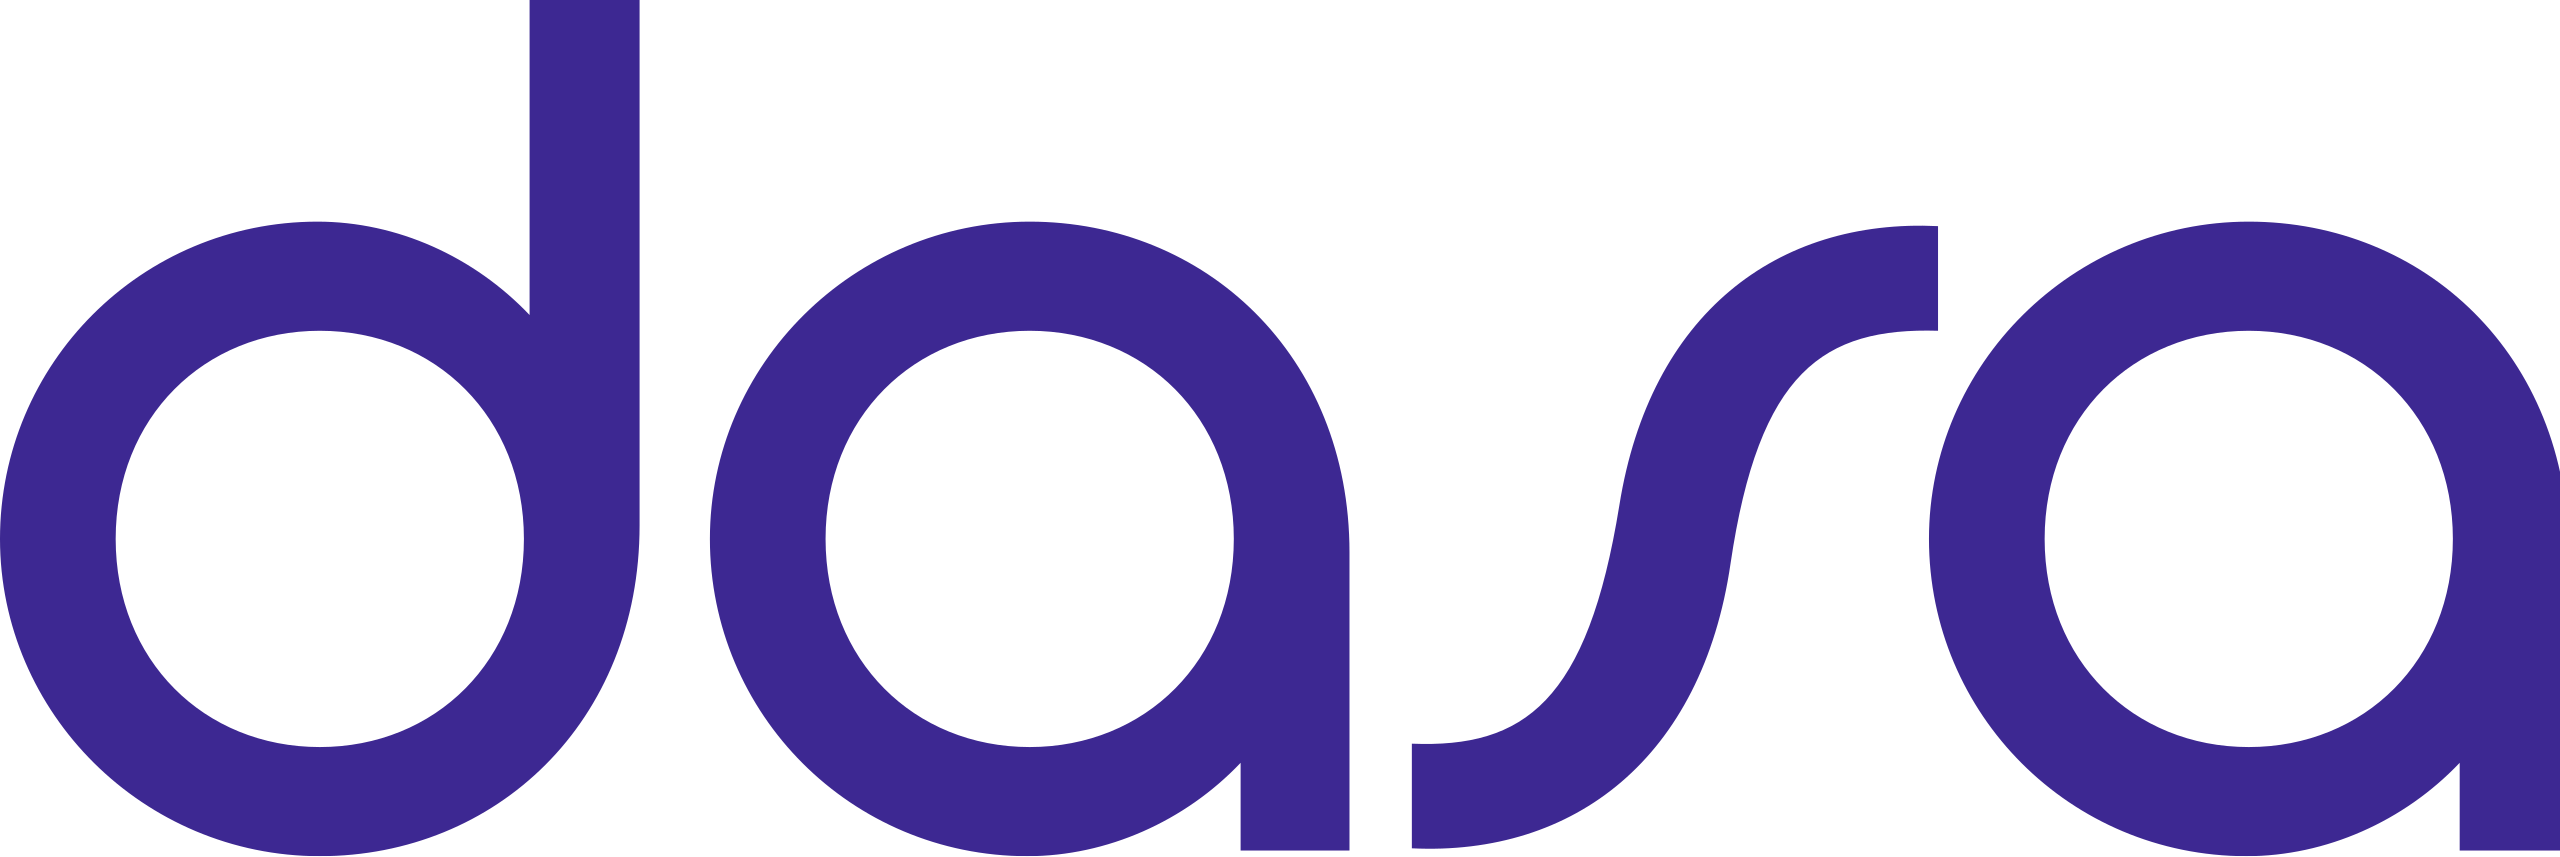 File:Logo da Dasa.svg - Wikipedia